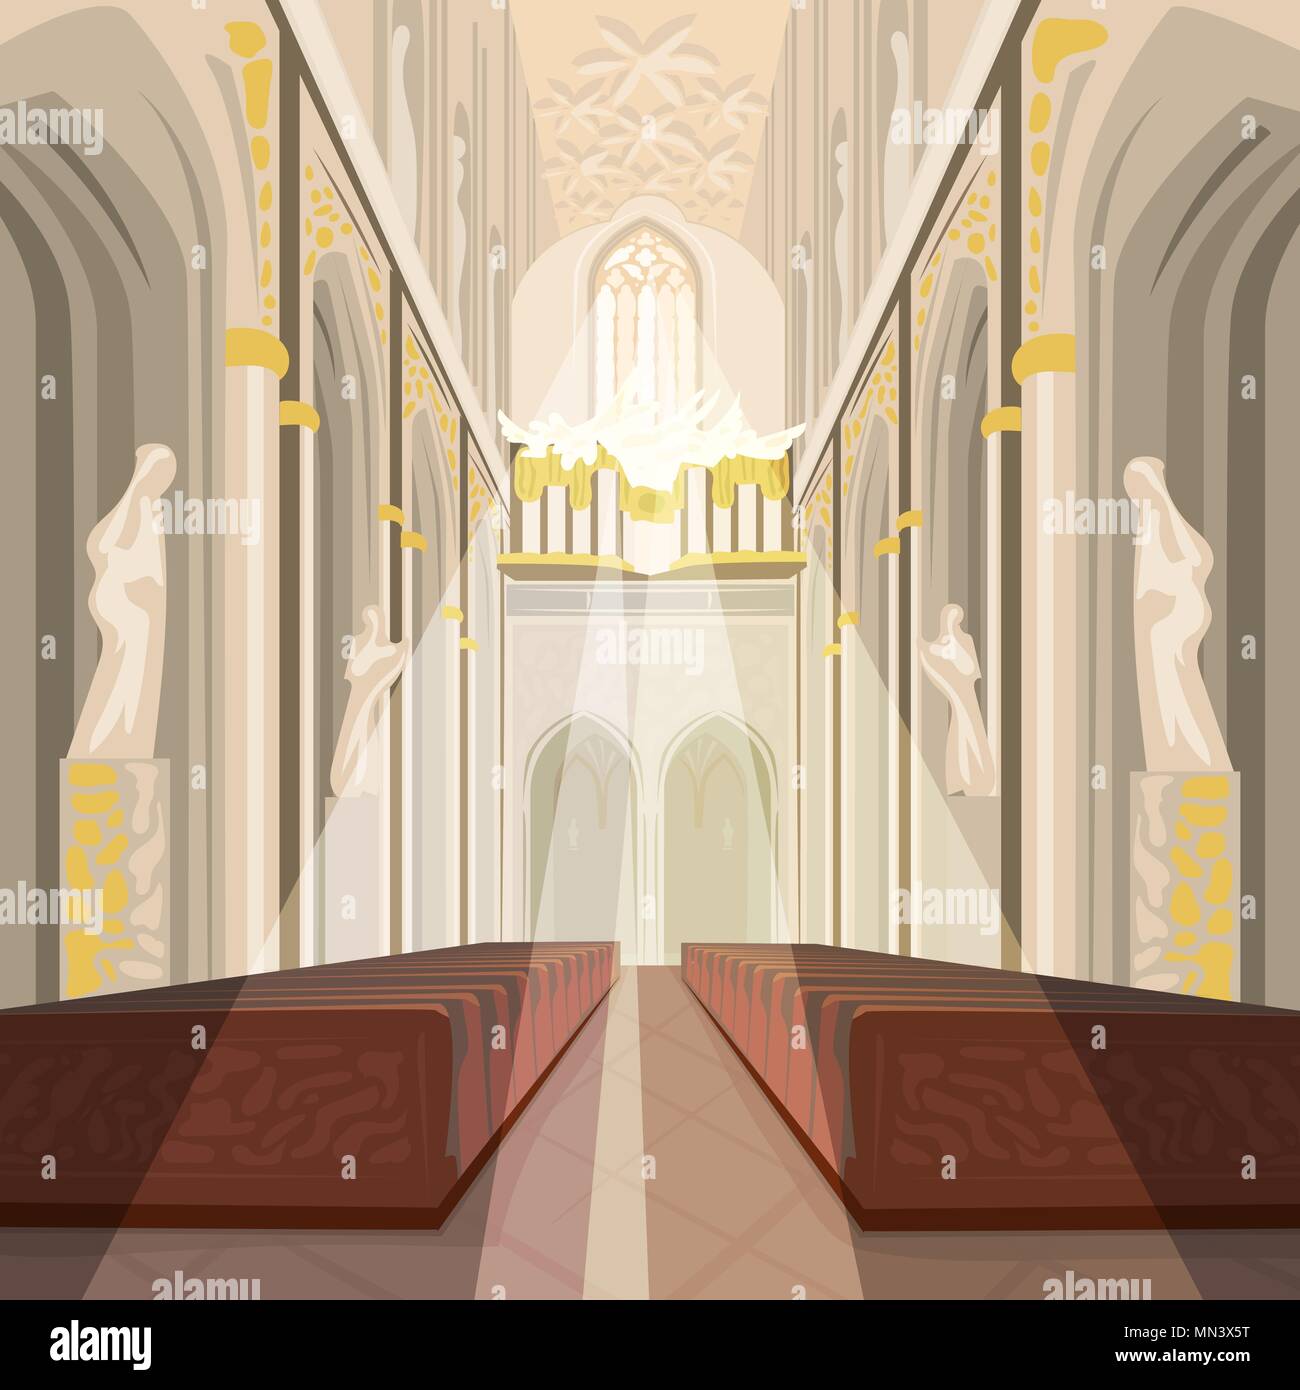 Belle vue sur l'autel de la nef à l'intérieur de cathédrale de l'Église. Intérieur de la basilique catholique avec les rayons du soleil à partir de windows Illustration de Vecteur